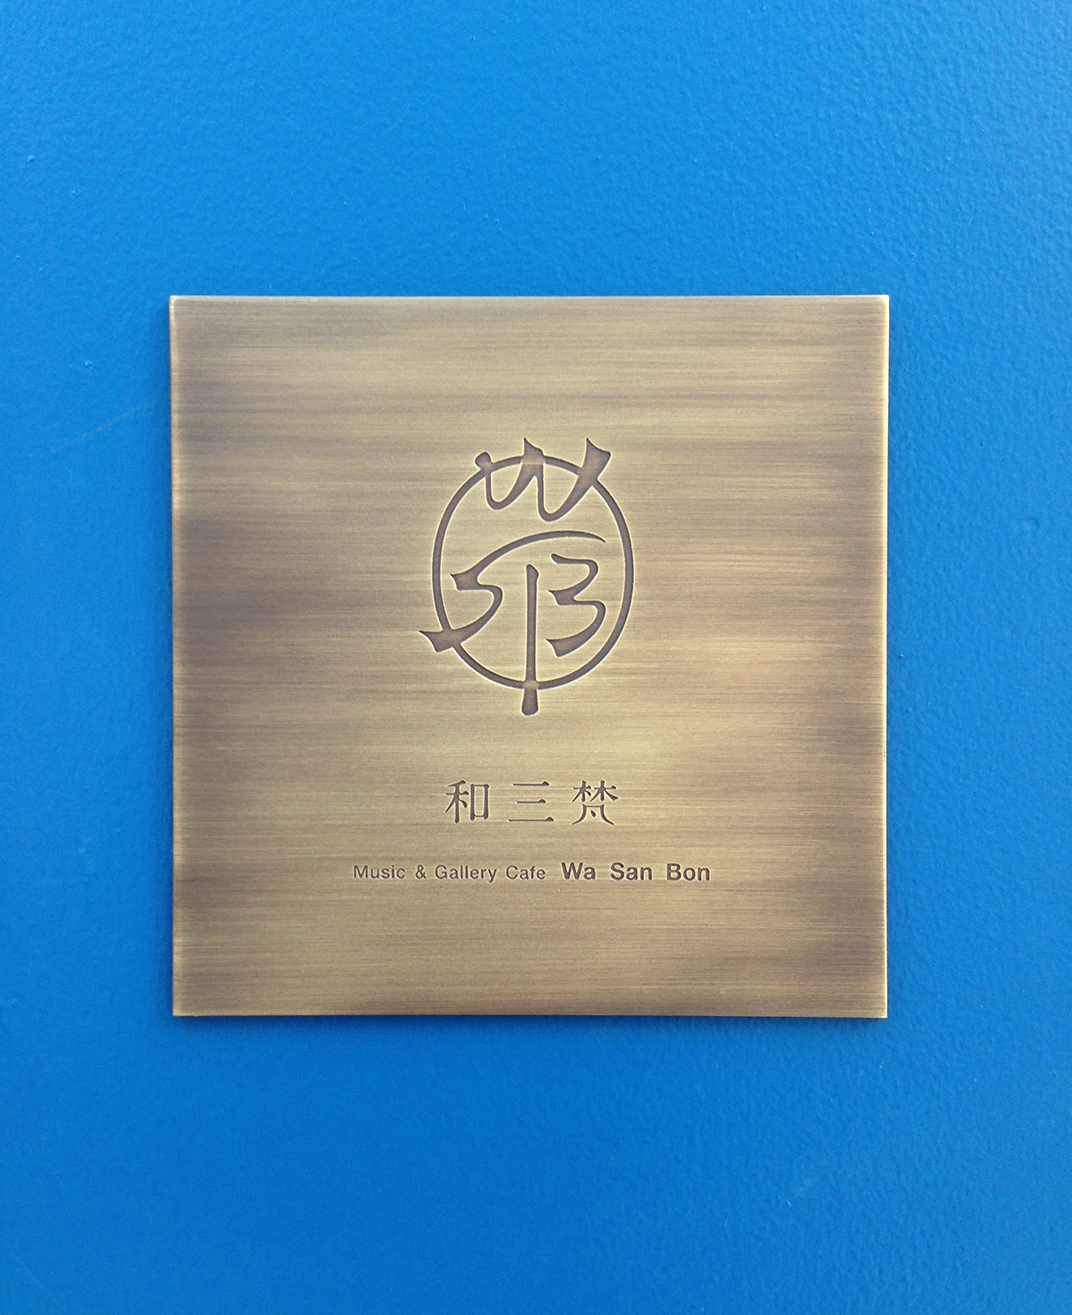 和三梵咖啡店vi设计 日本 上海 深圳 北京 广州 武汉 餐饮商业空间 logo设计 vi设计 空间设计